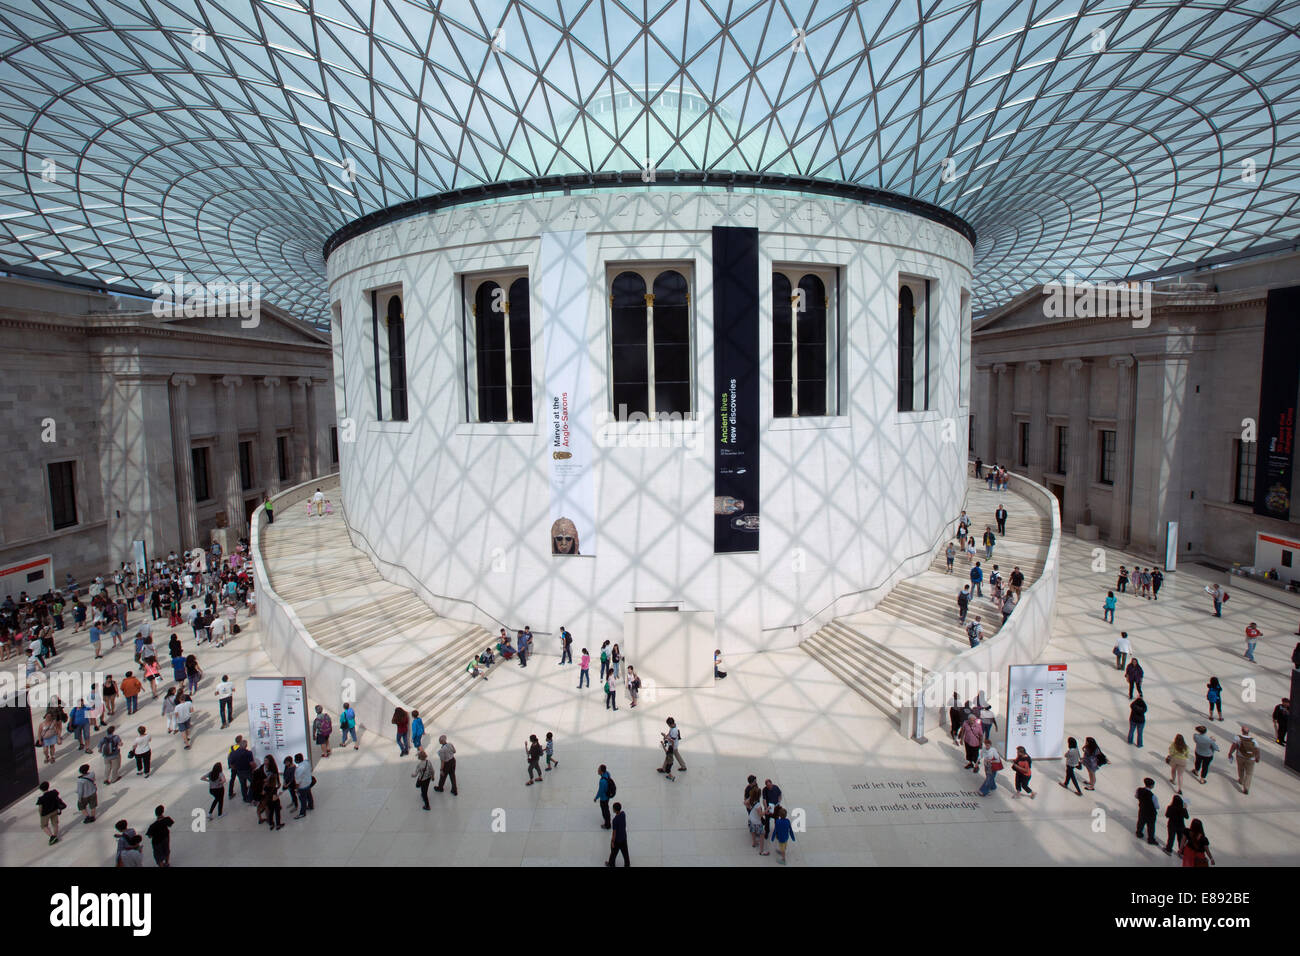 La grande cour du British Museum,la plus grande cour couverte en Europe conçu par Foster and Partners et construit en 2001 Banque D'Images